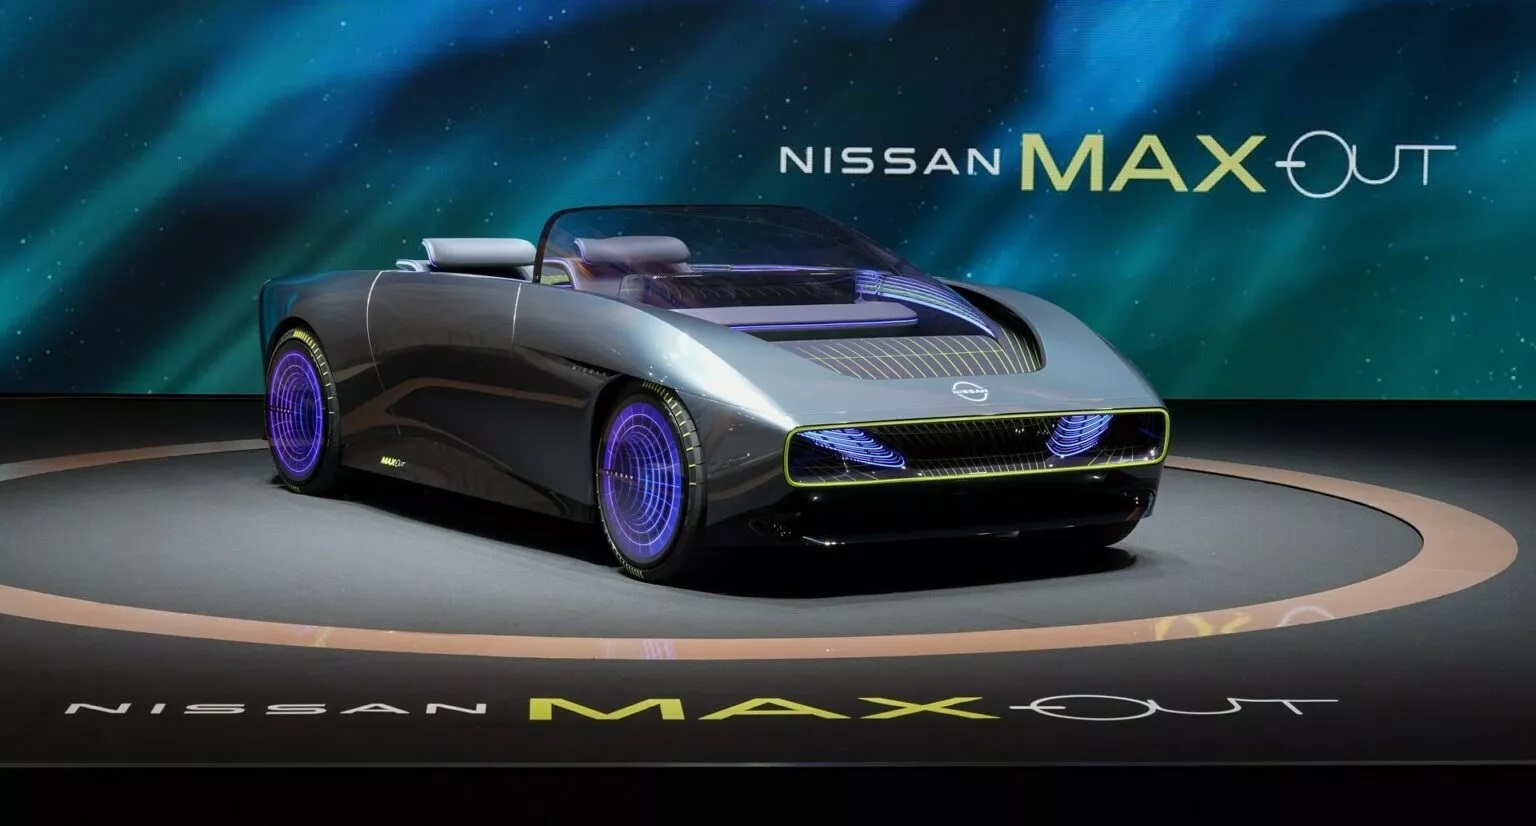 Mintha egy futurisztikus videojáték eleme lenne a Nissan új koncepciója